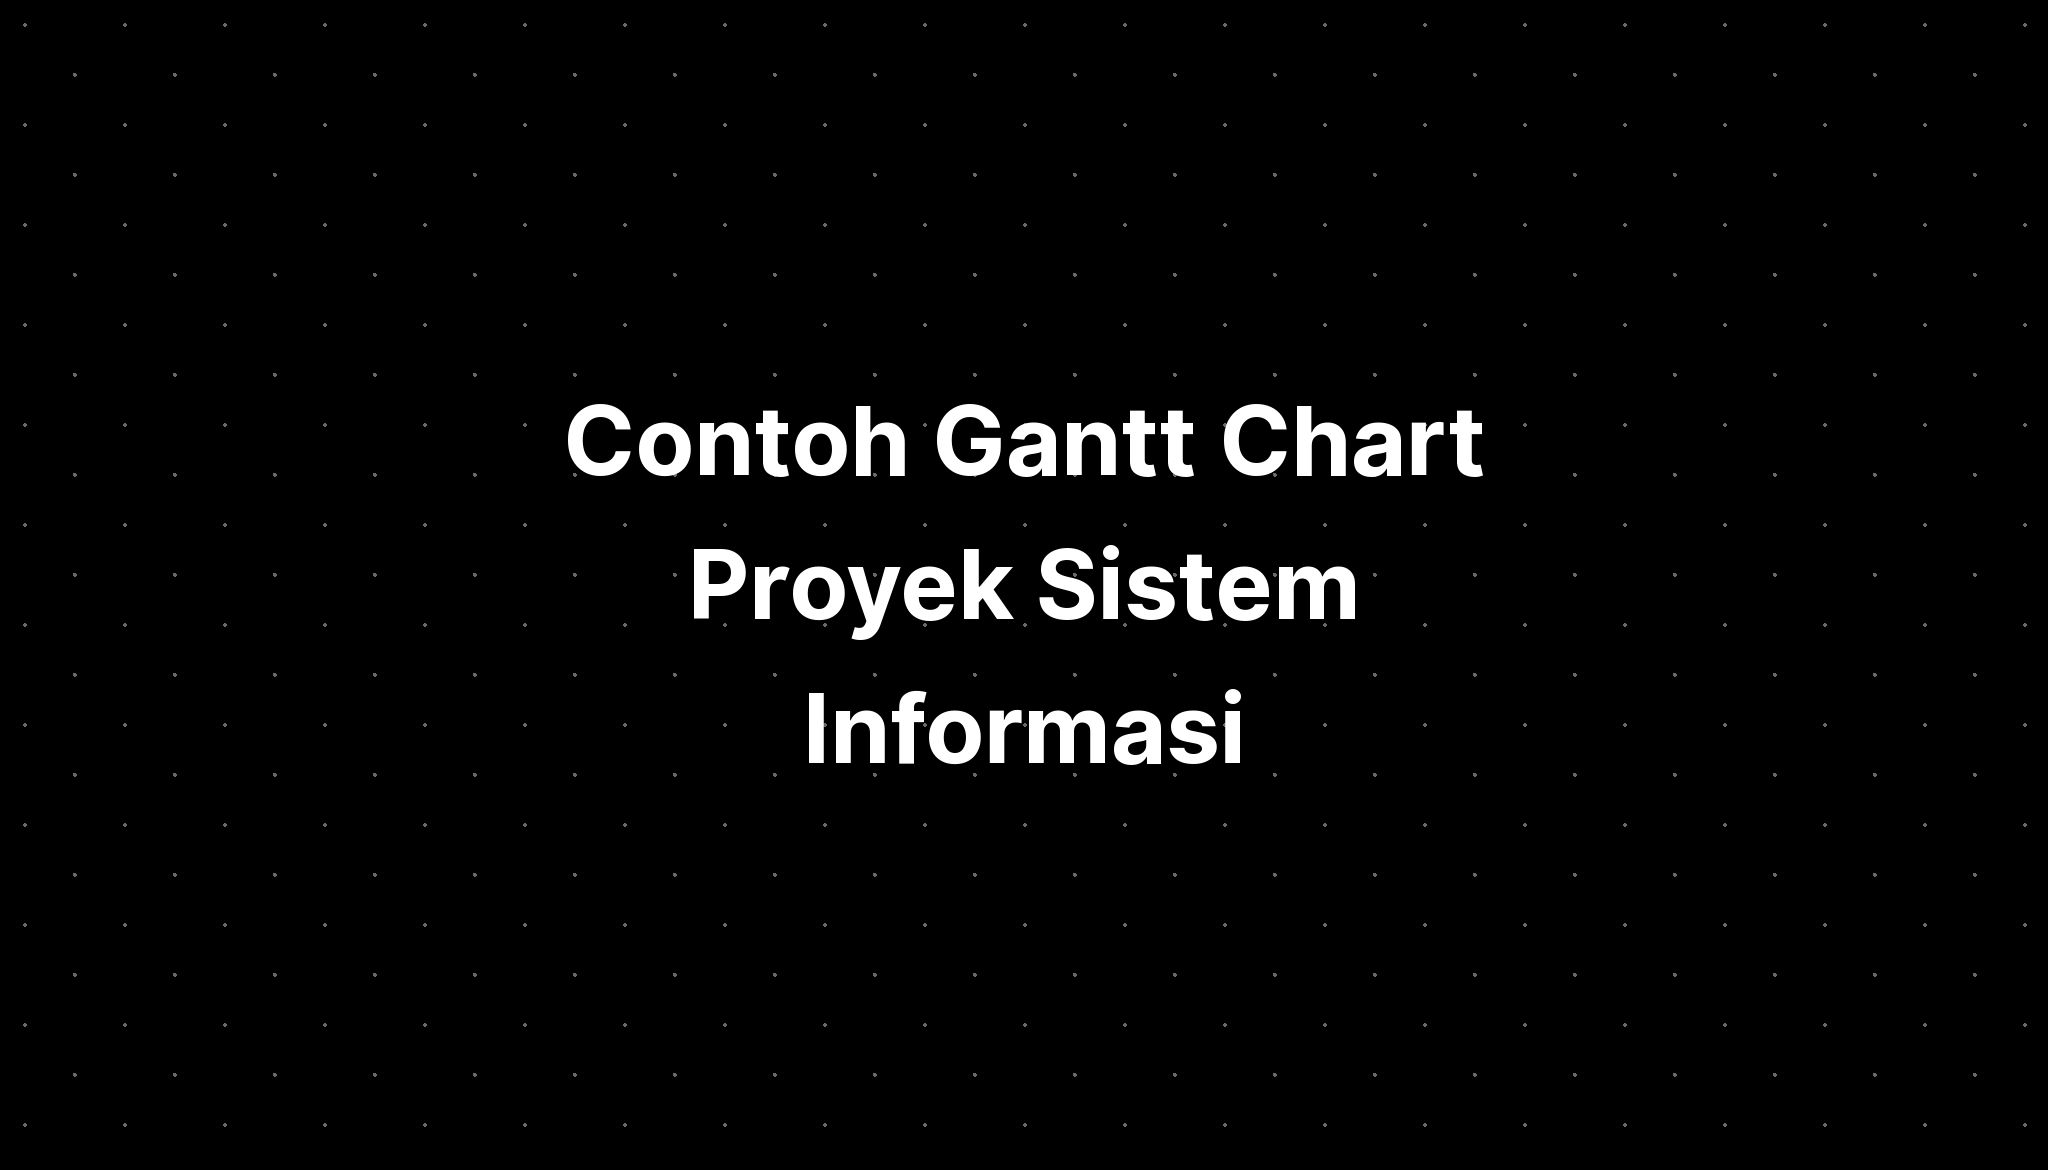 Contoh Gantt Chart Proyek Sistem Informasi - IMAGESEE